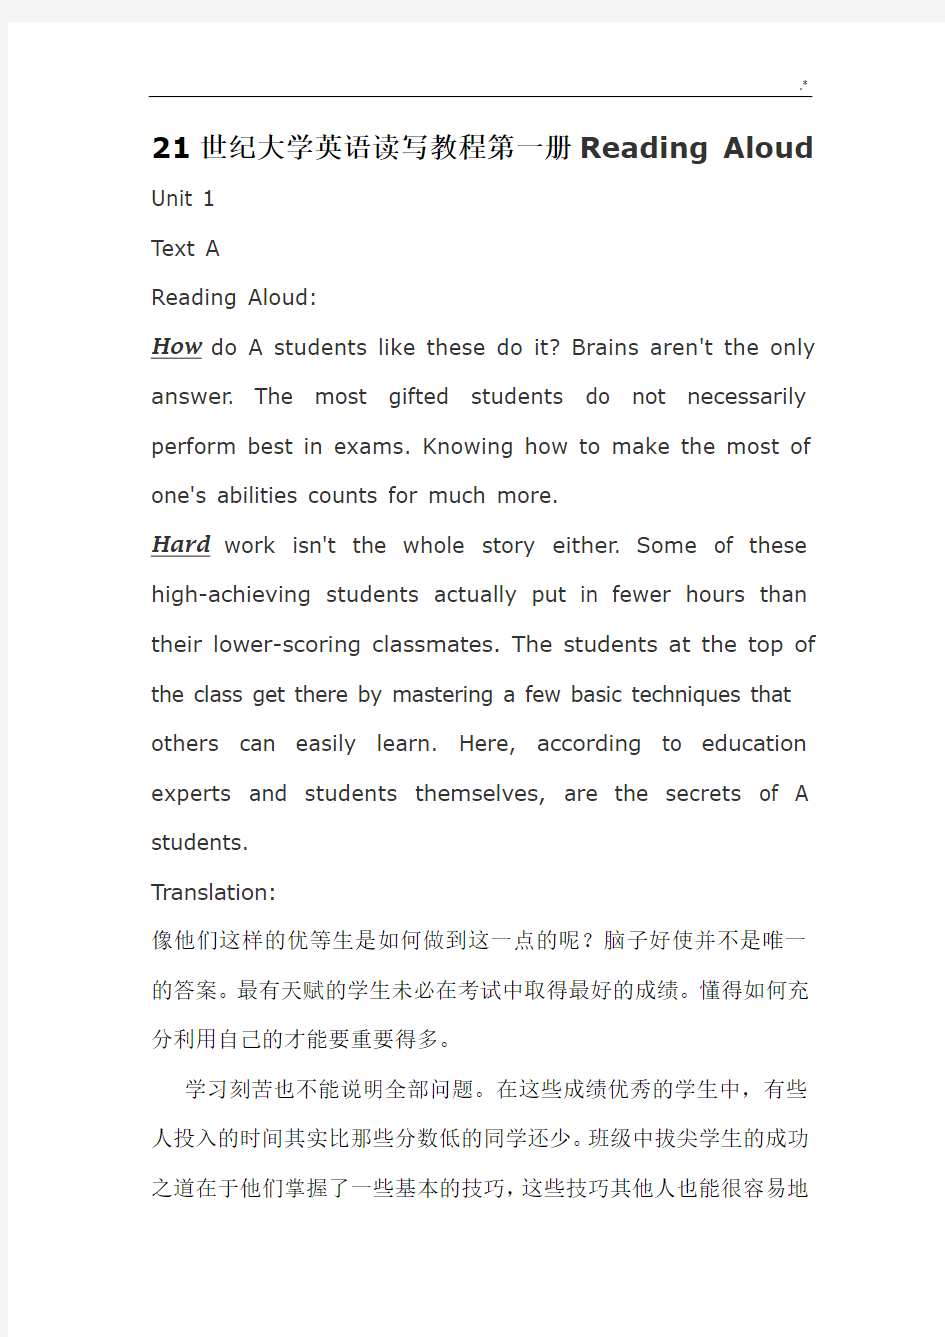 21世纪大学英语读写教育教案第一册-要求背诵段落及其翻译